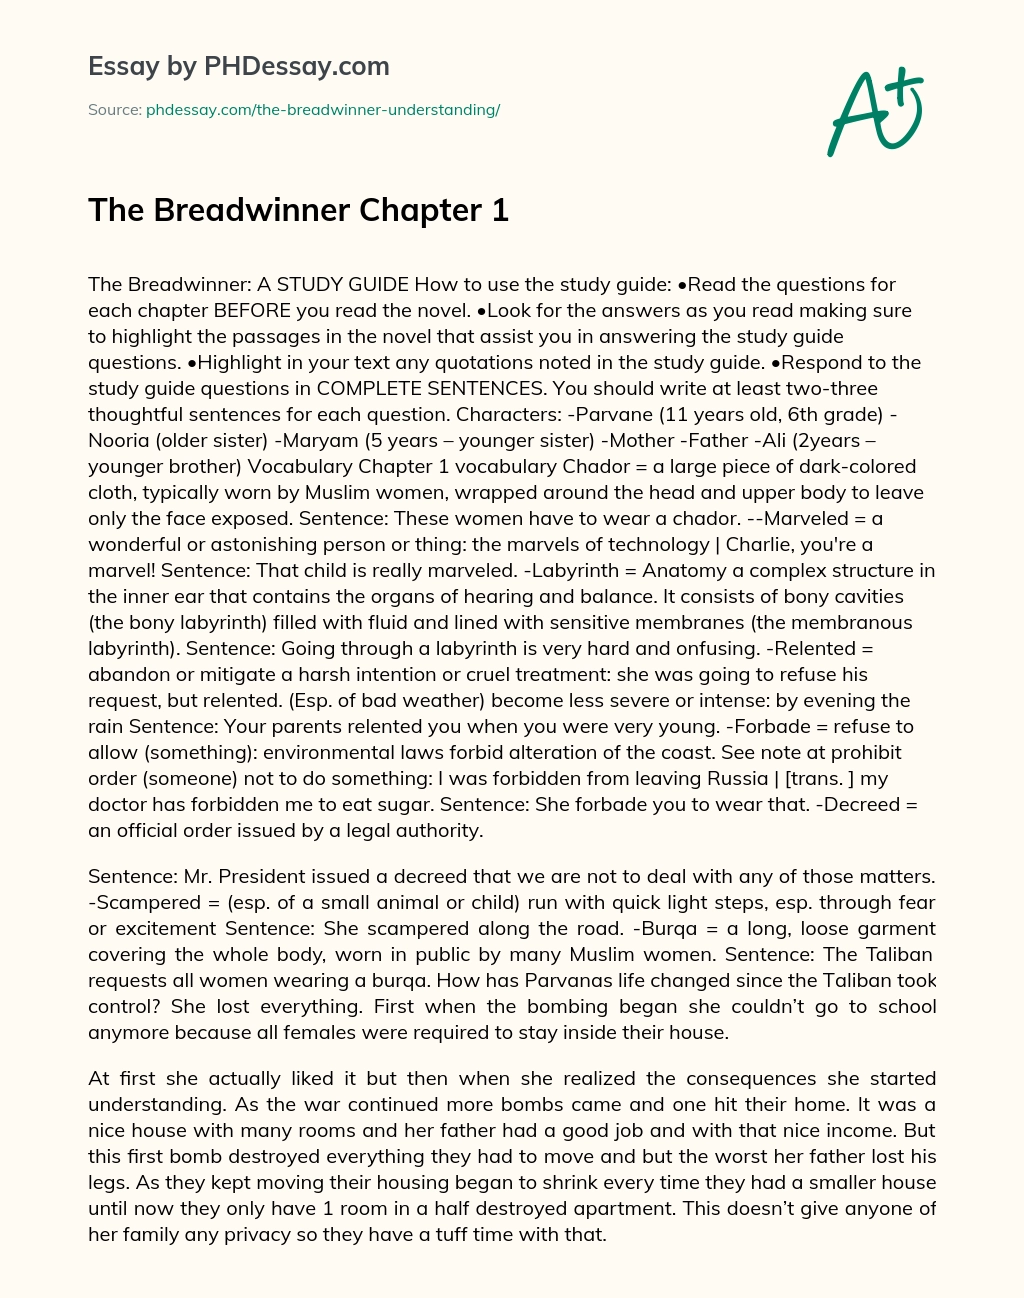 The Breadwinner Chapter 1 essay